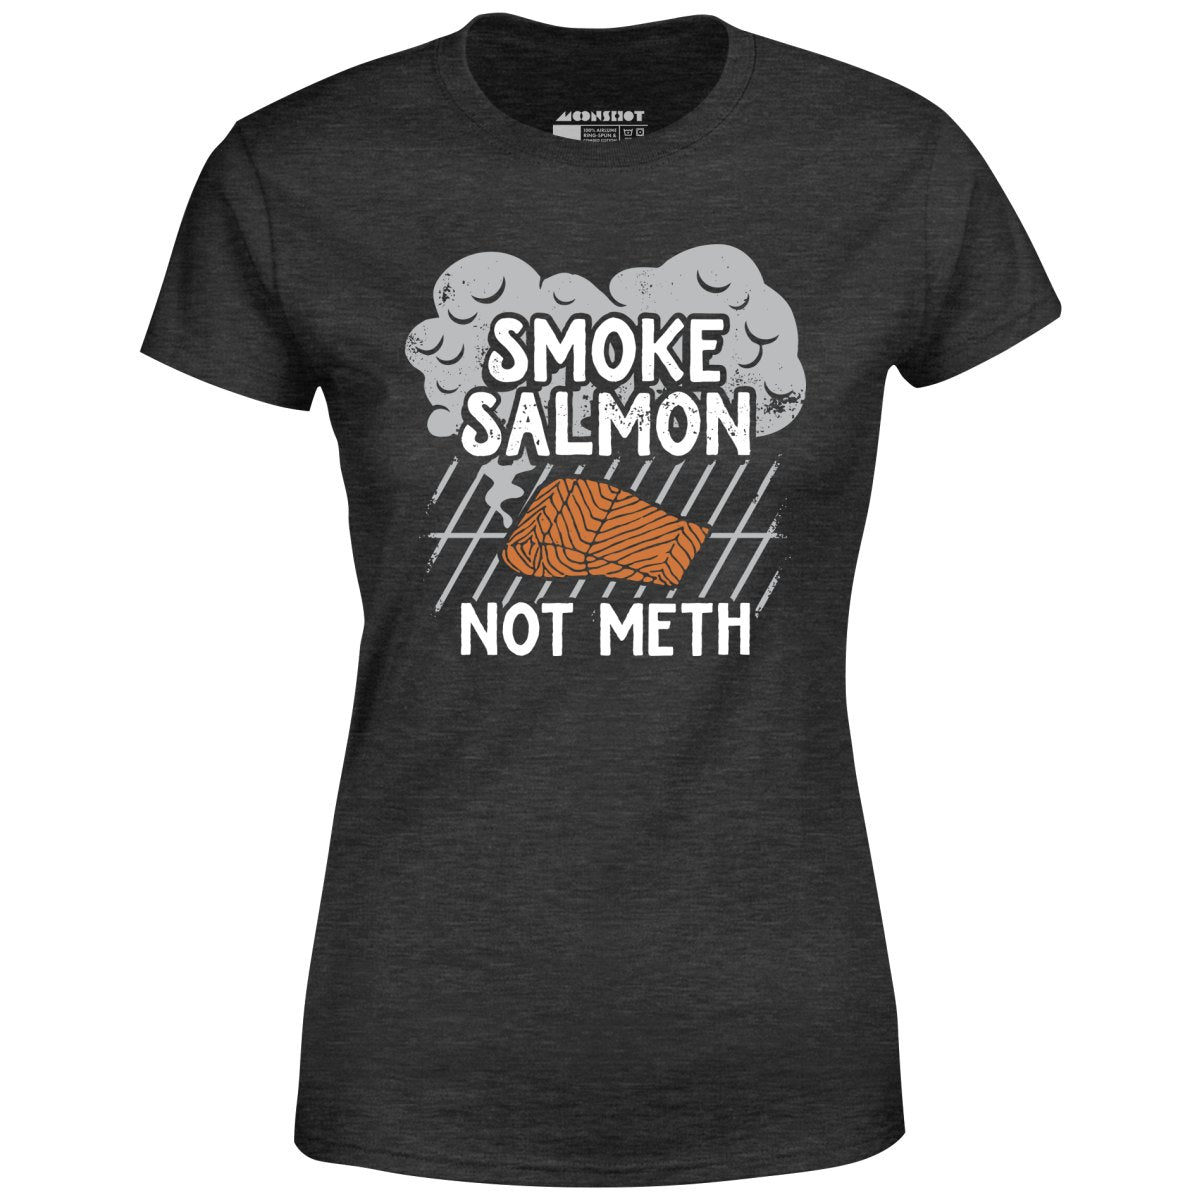 Smoke Salmon Not Meth - Women's T-Shirt